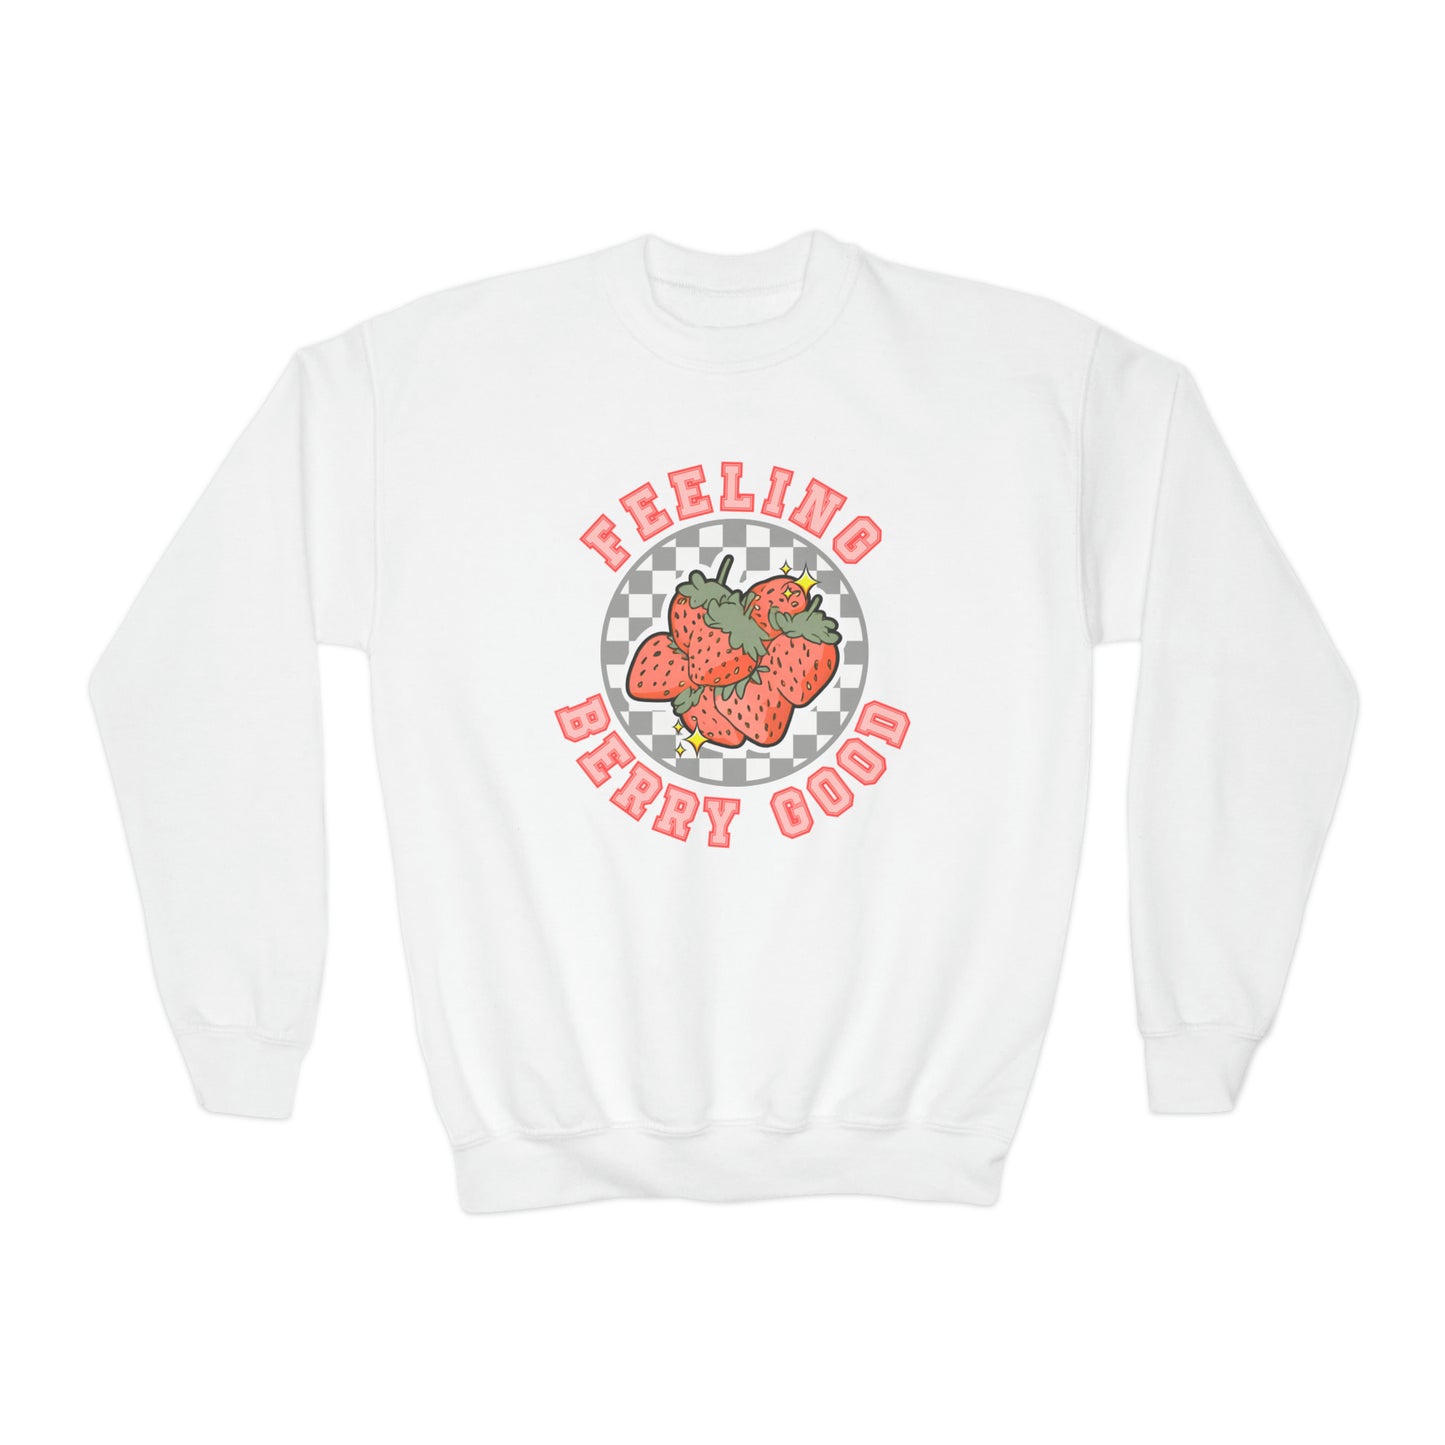 Feeling Berry Good - Youth Crewneck Sweatshirt